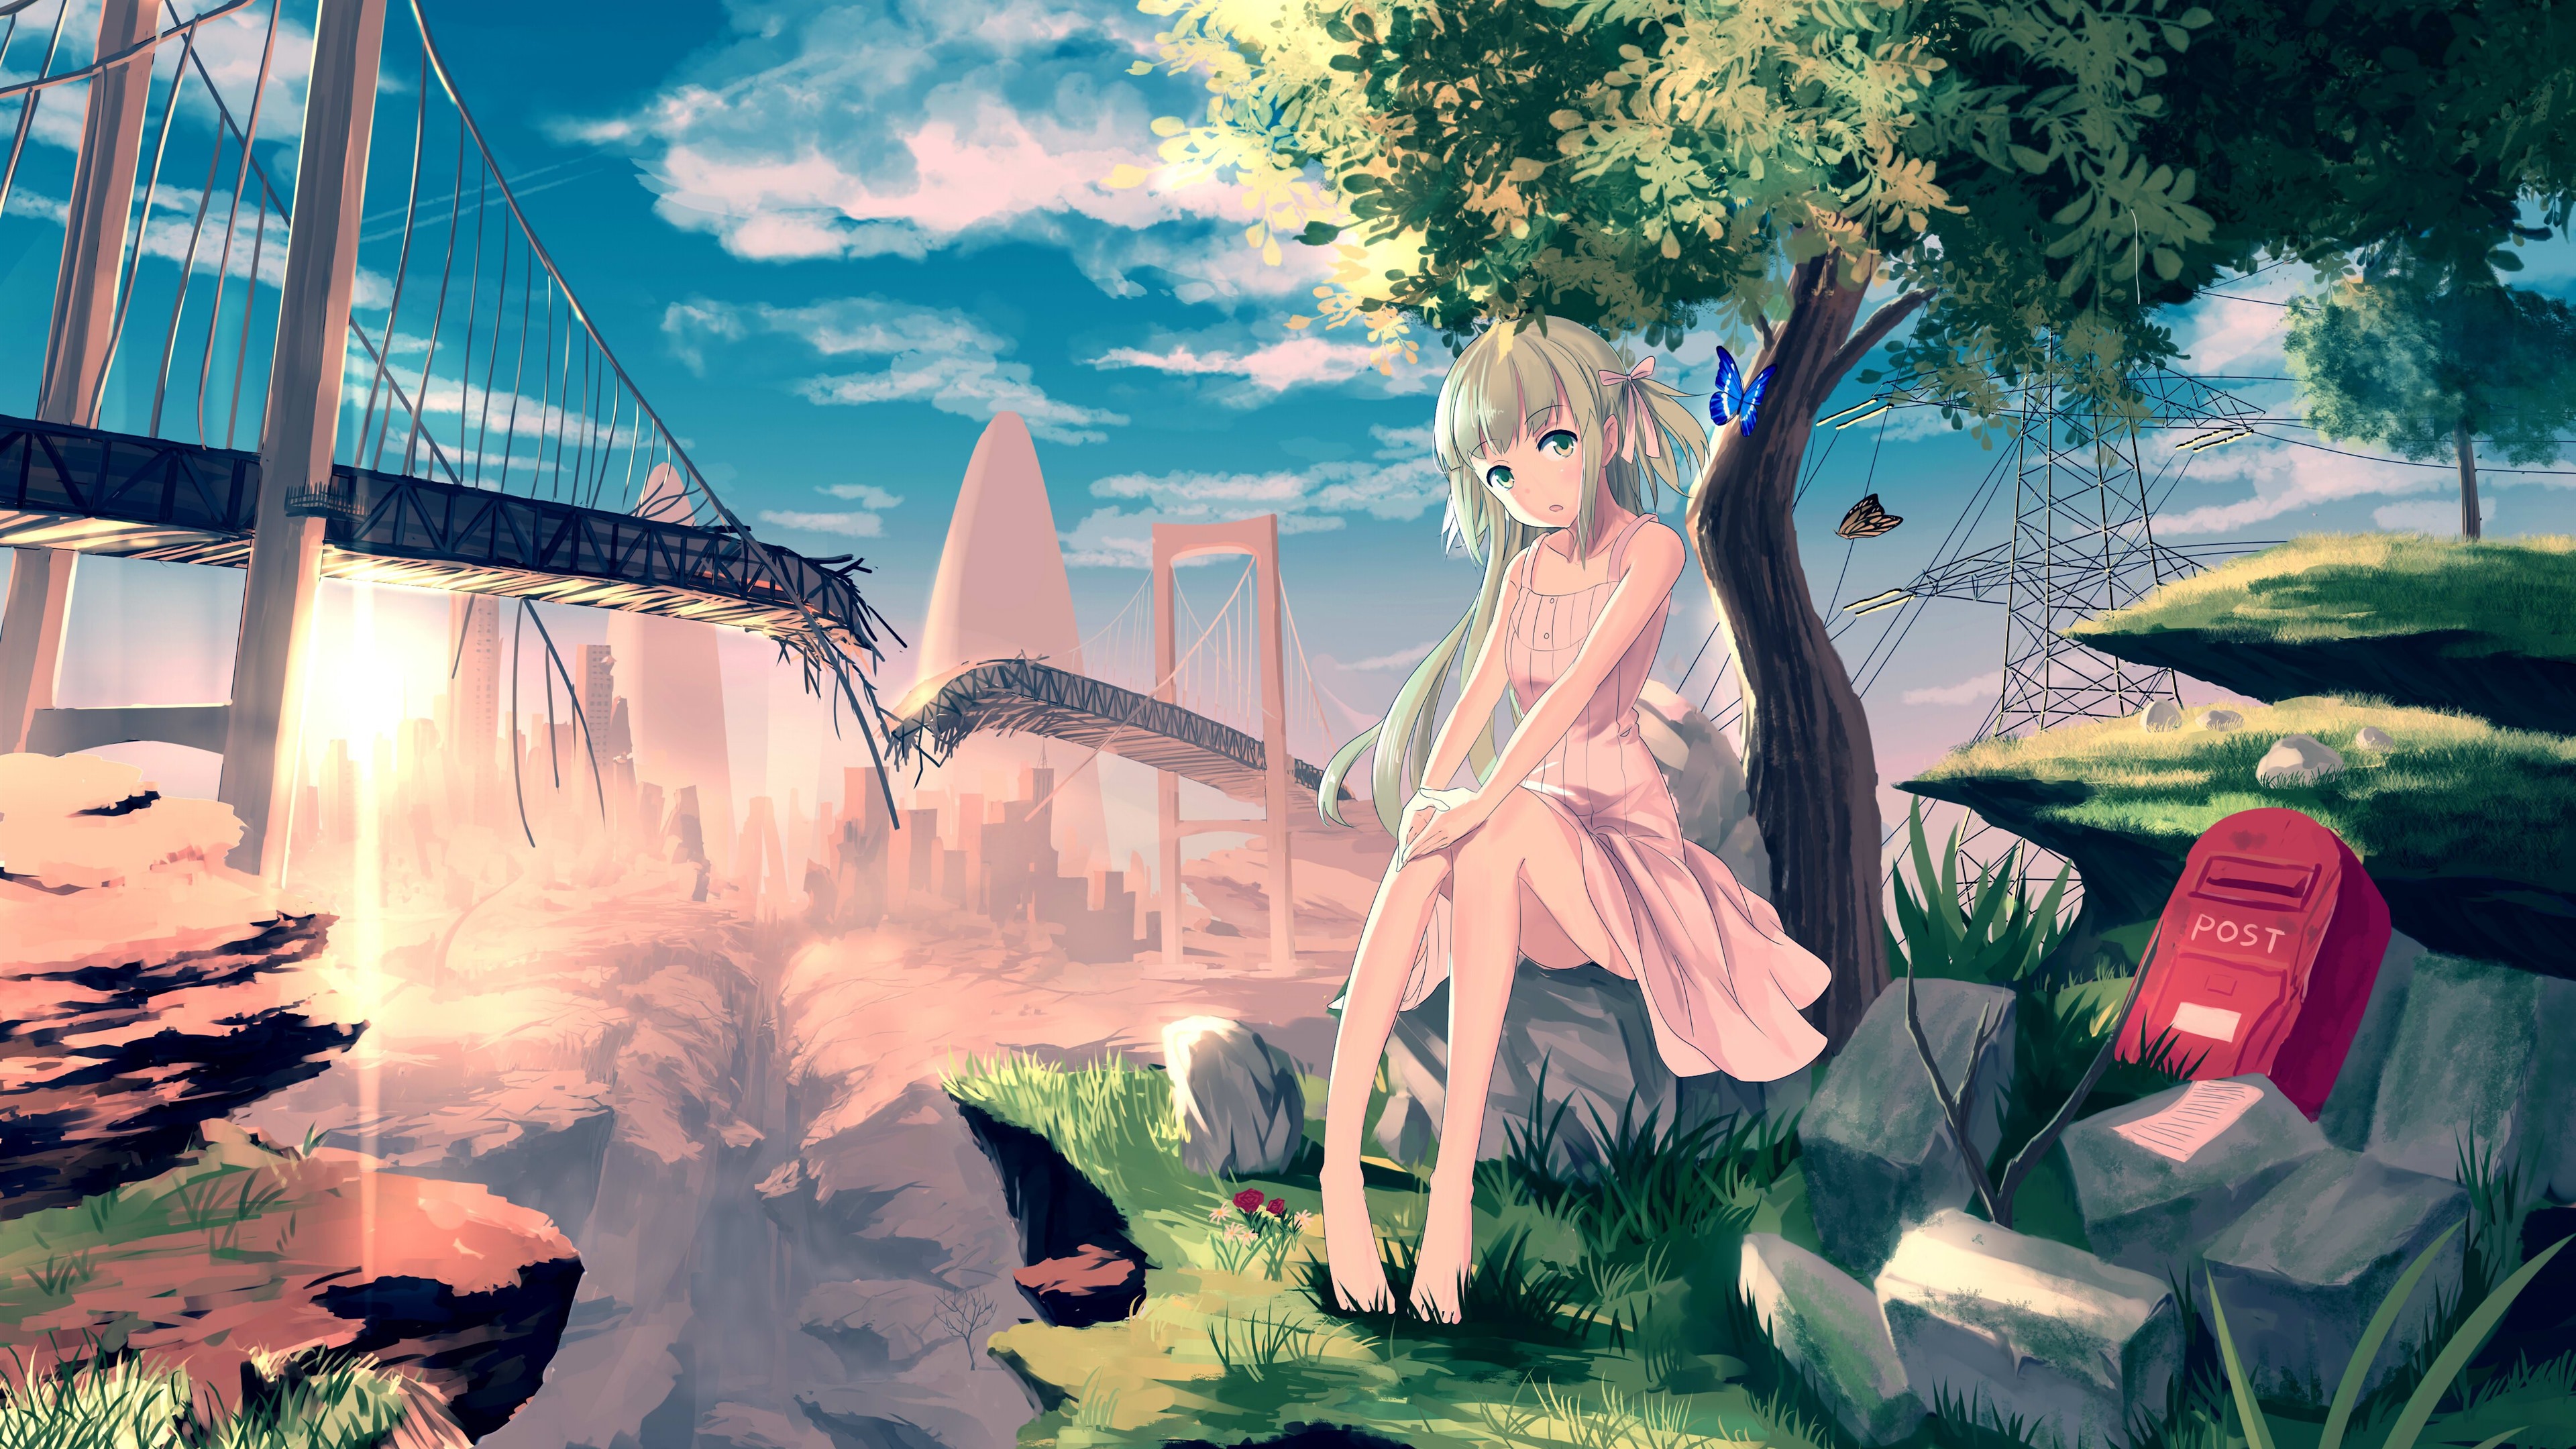 Wallpaper Lonely anime girl, tree, butterfly, broken bridge